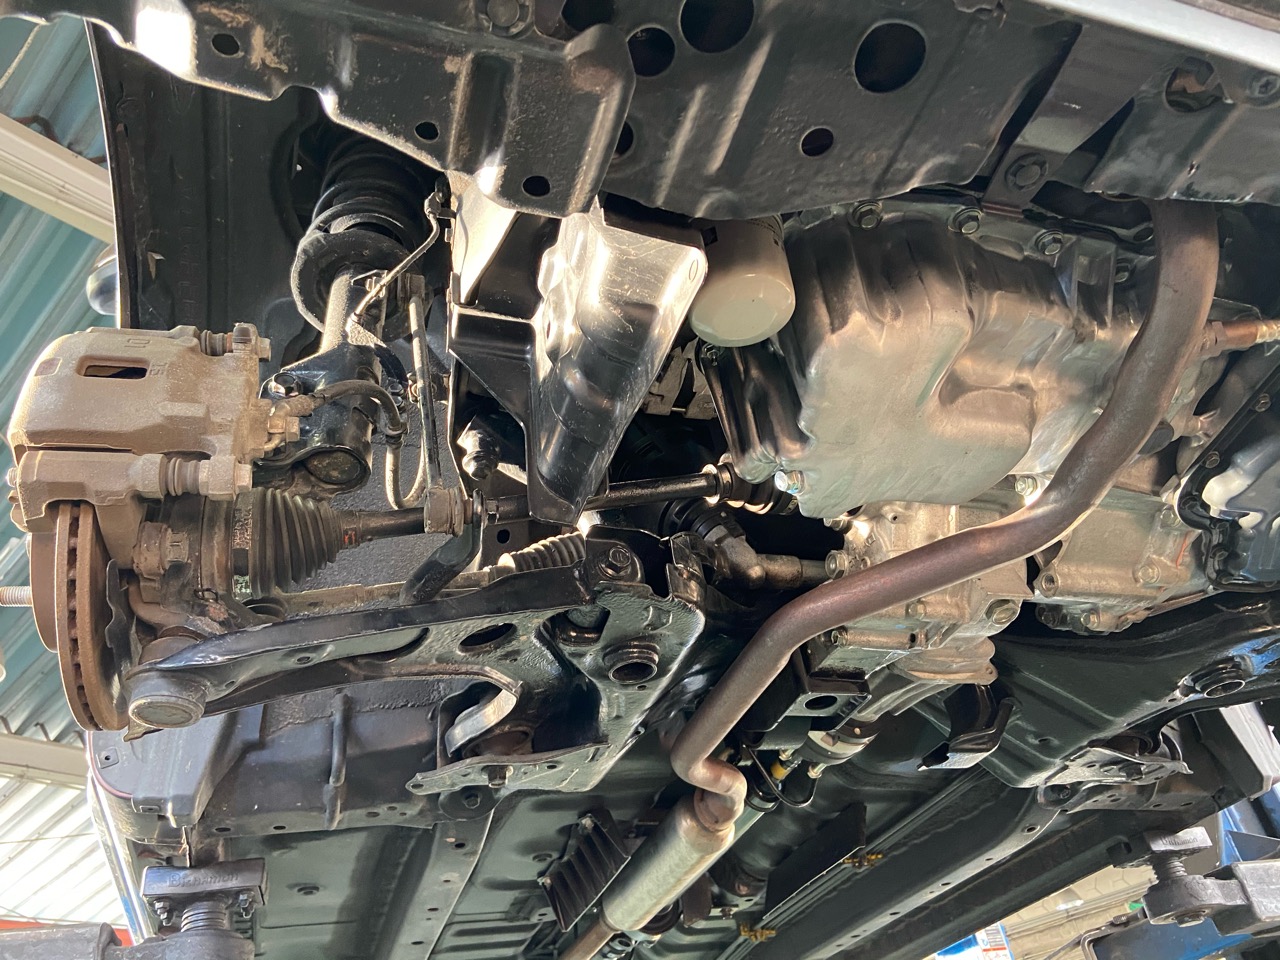 壊れやすいダイハツkfエンジンのオイルパン交換は5万円超の修理代 4wd車に要注意 Mho Engineering